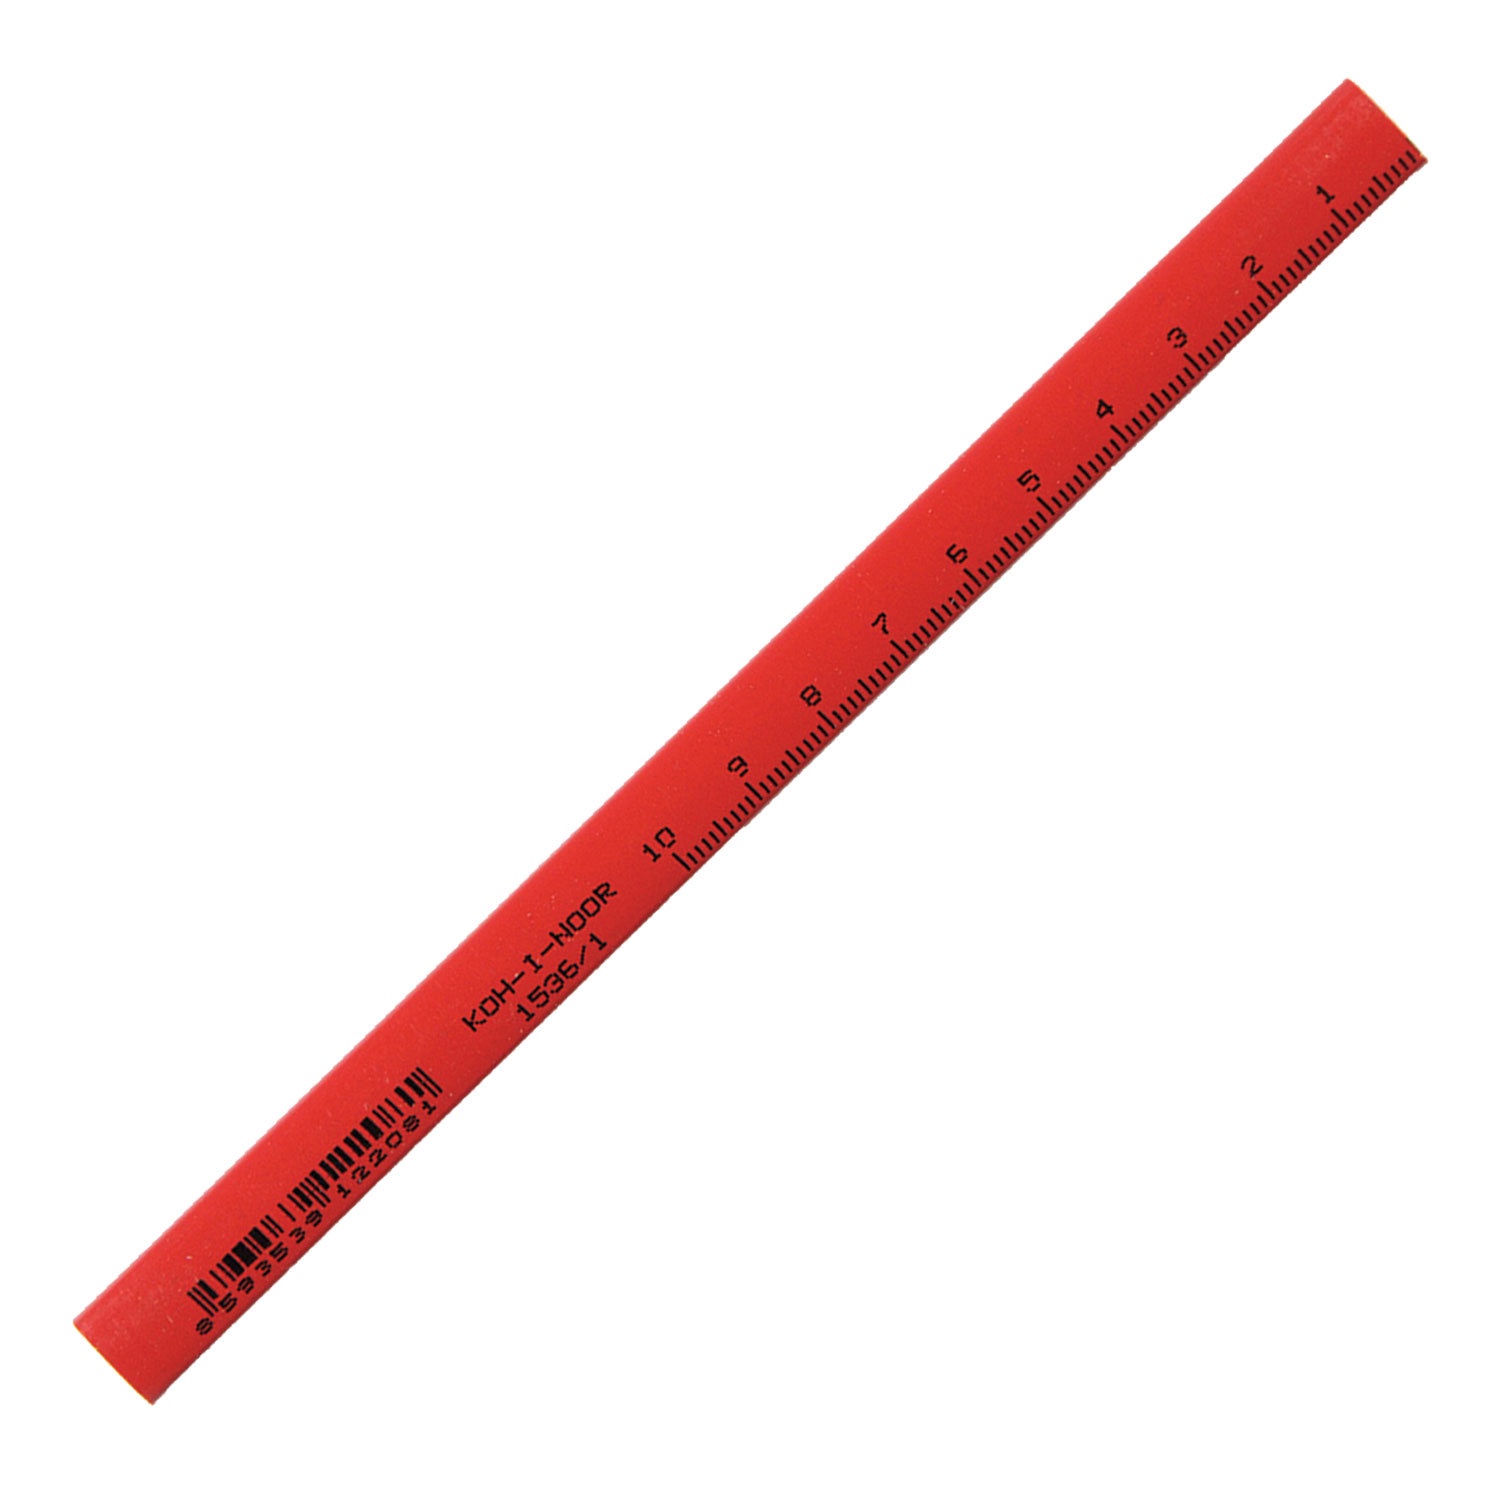 Карандаш KOH-I-NOOR столярный, 1 шт., B, грифель 5х2 мм, корпус красный, 0153600100177